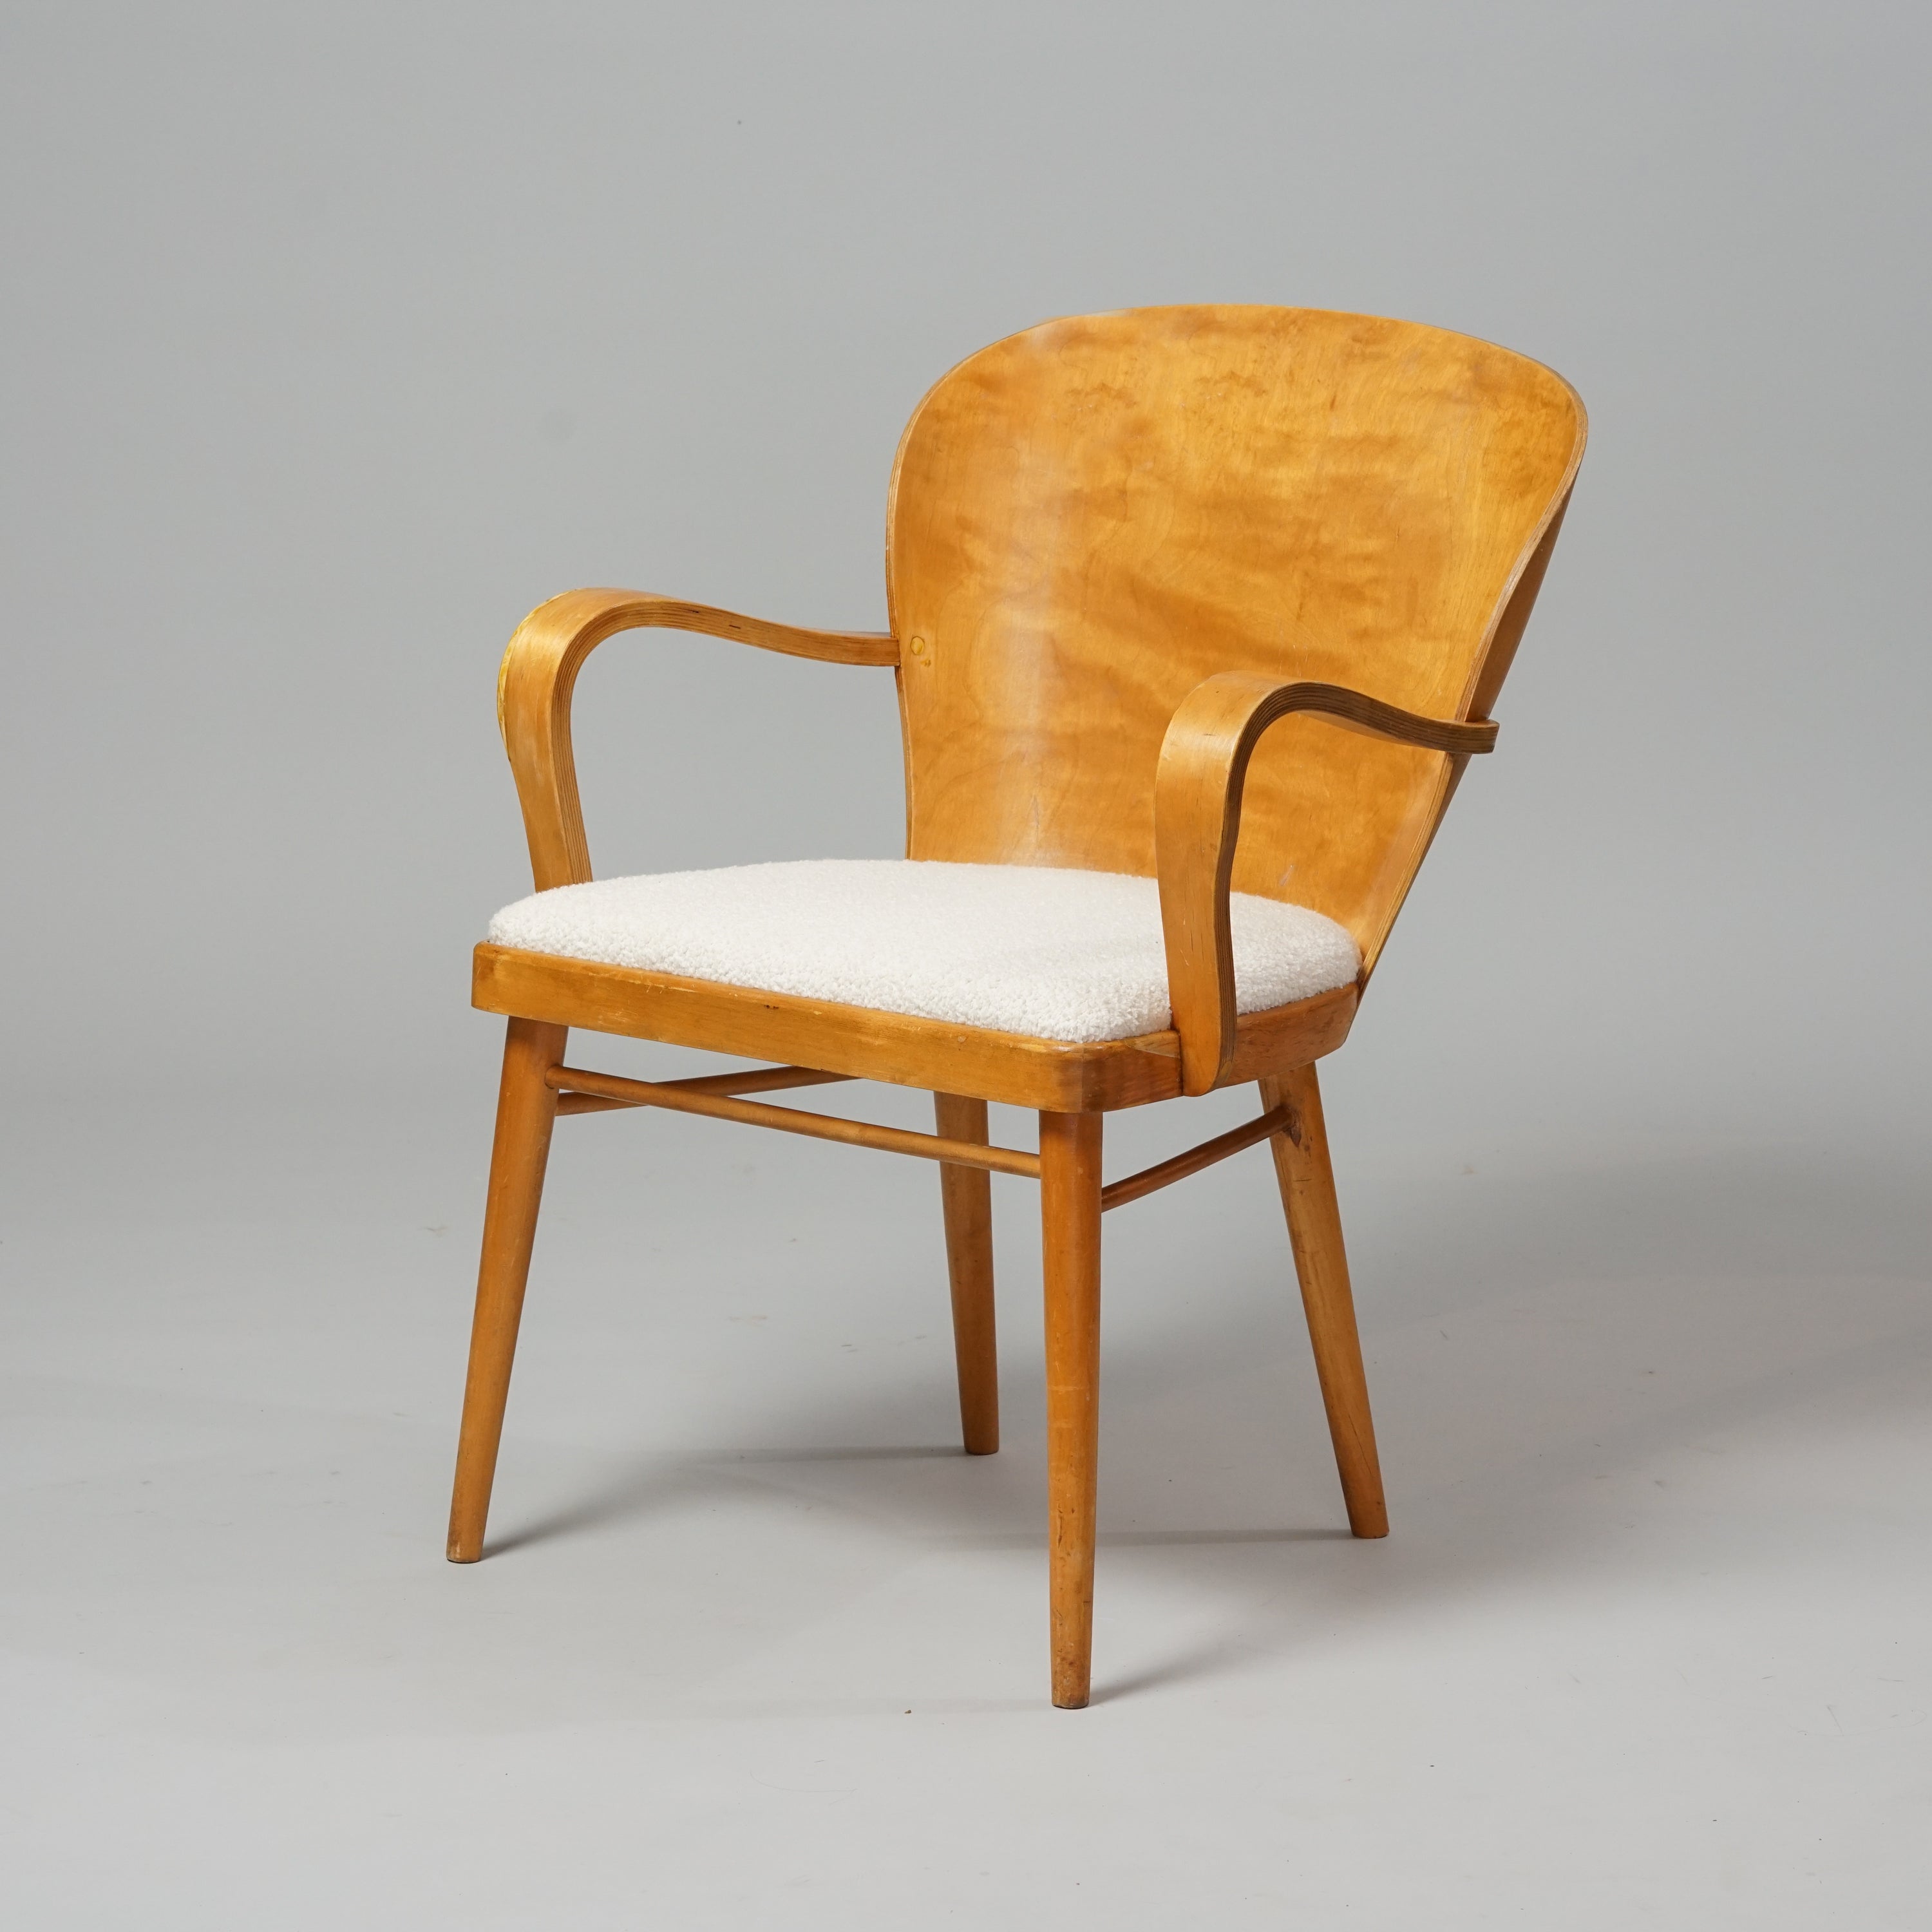 Koivusta tehty tuoli, jossa on leveä kaareva selkänoja. Selkänoja on puinen, ja istuin on verhoiltu valkoisella kankaalla.